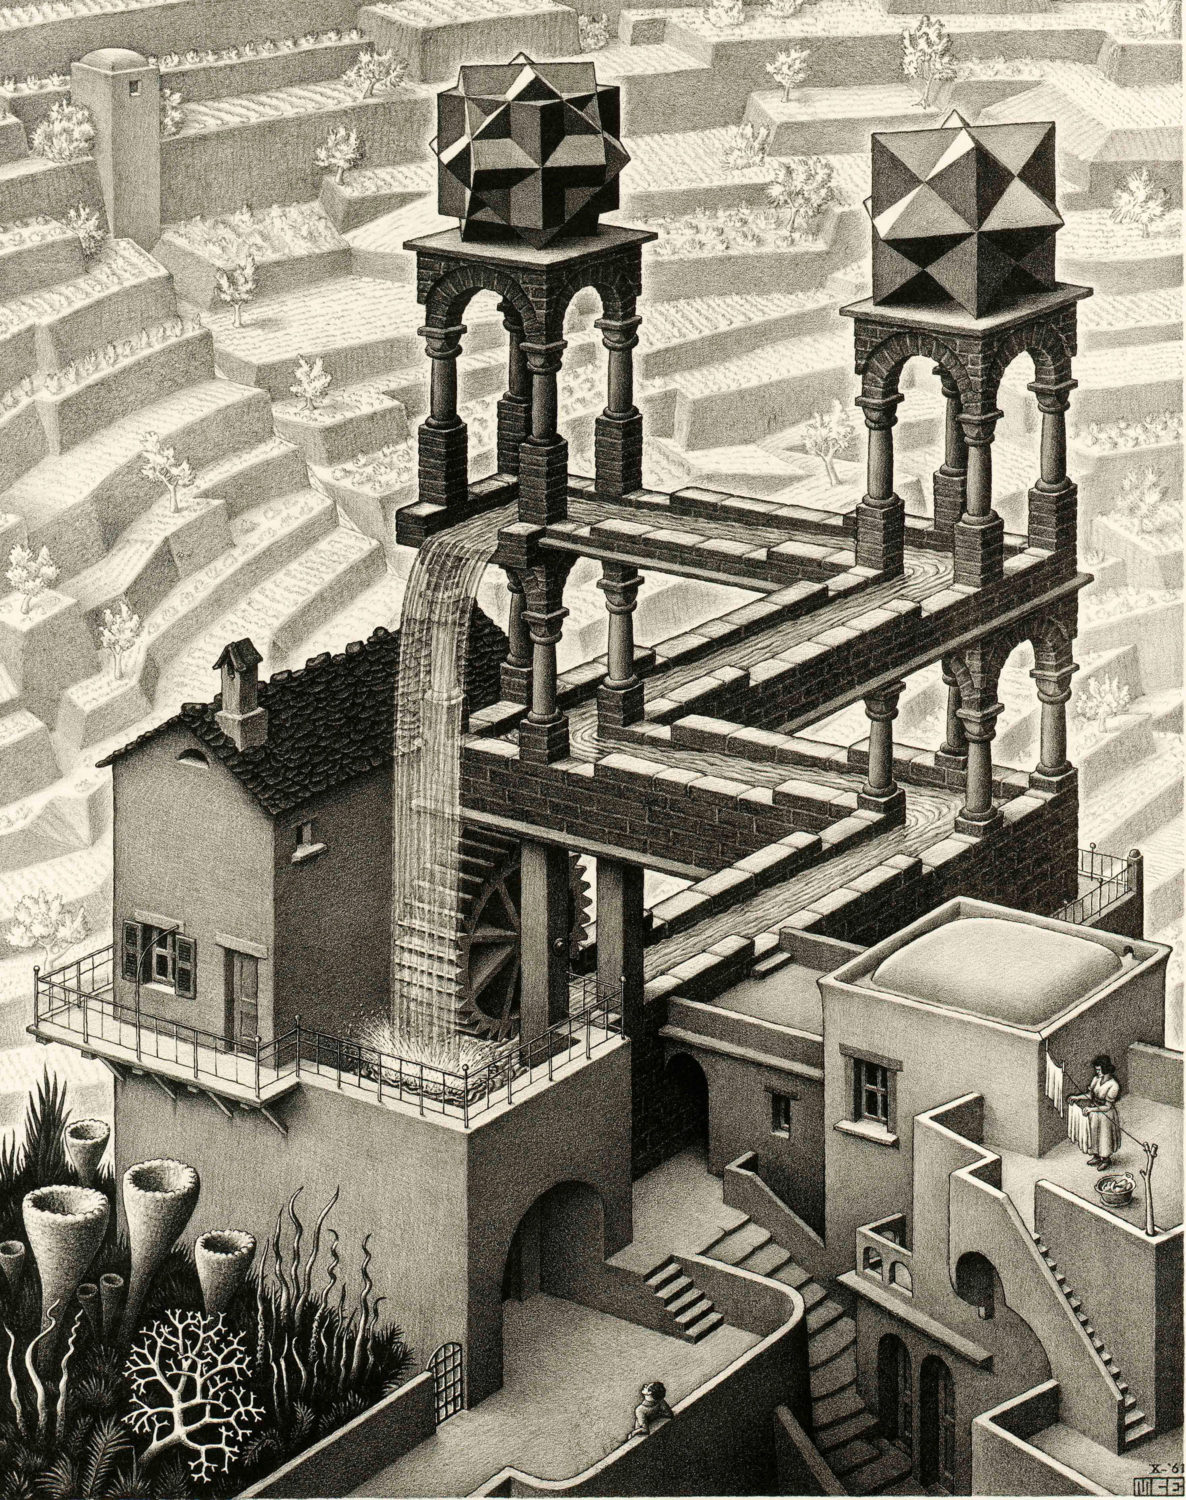 Waterfall by M.C. Escher © The M.C. Escher Company B.V. Baarn – the Netherlands